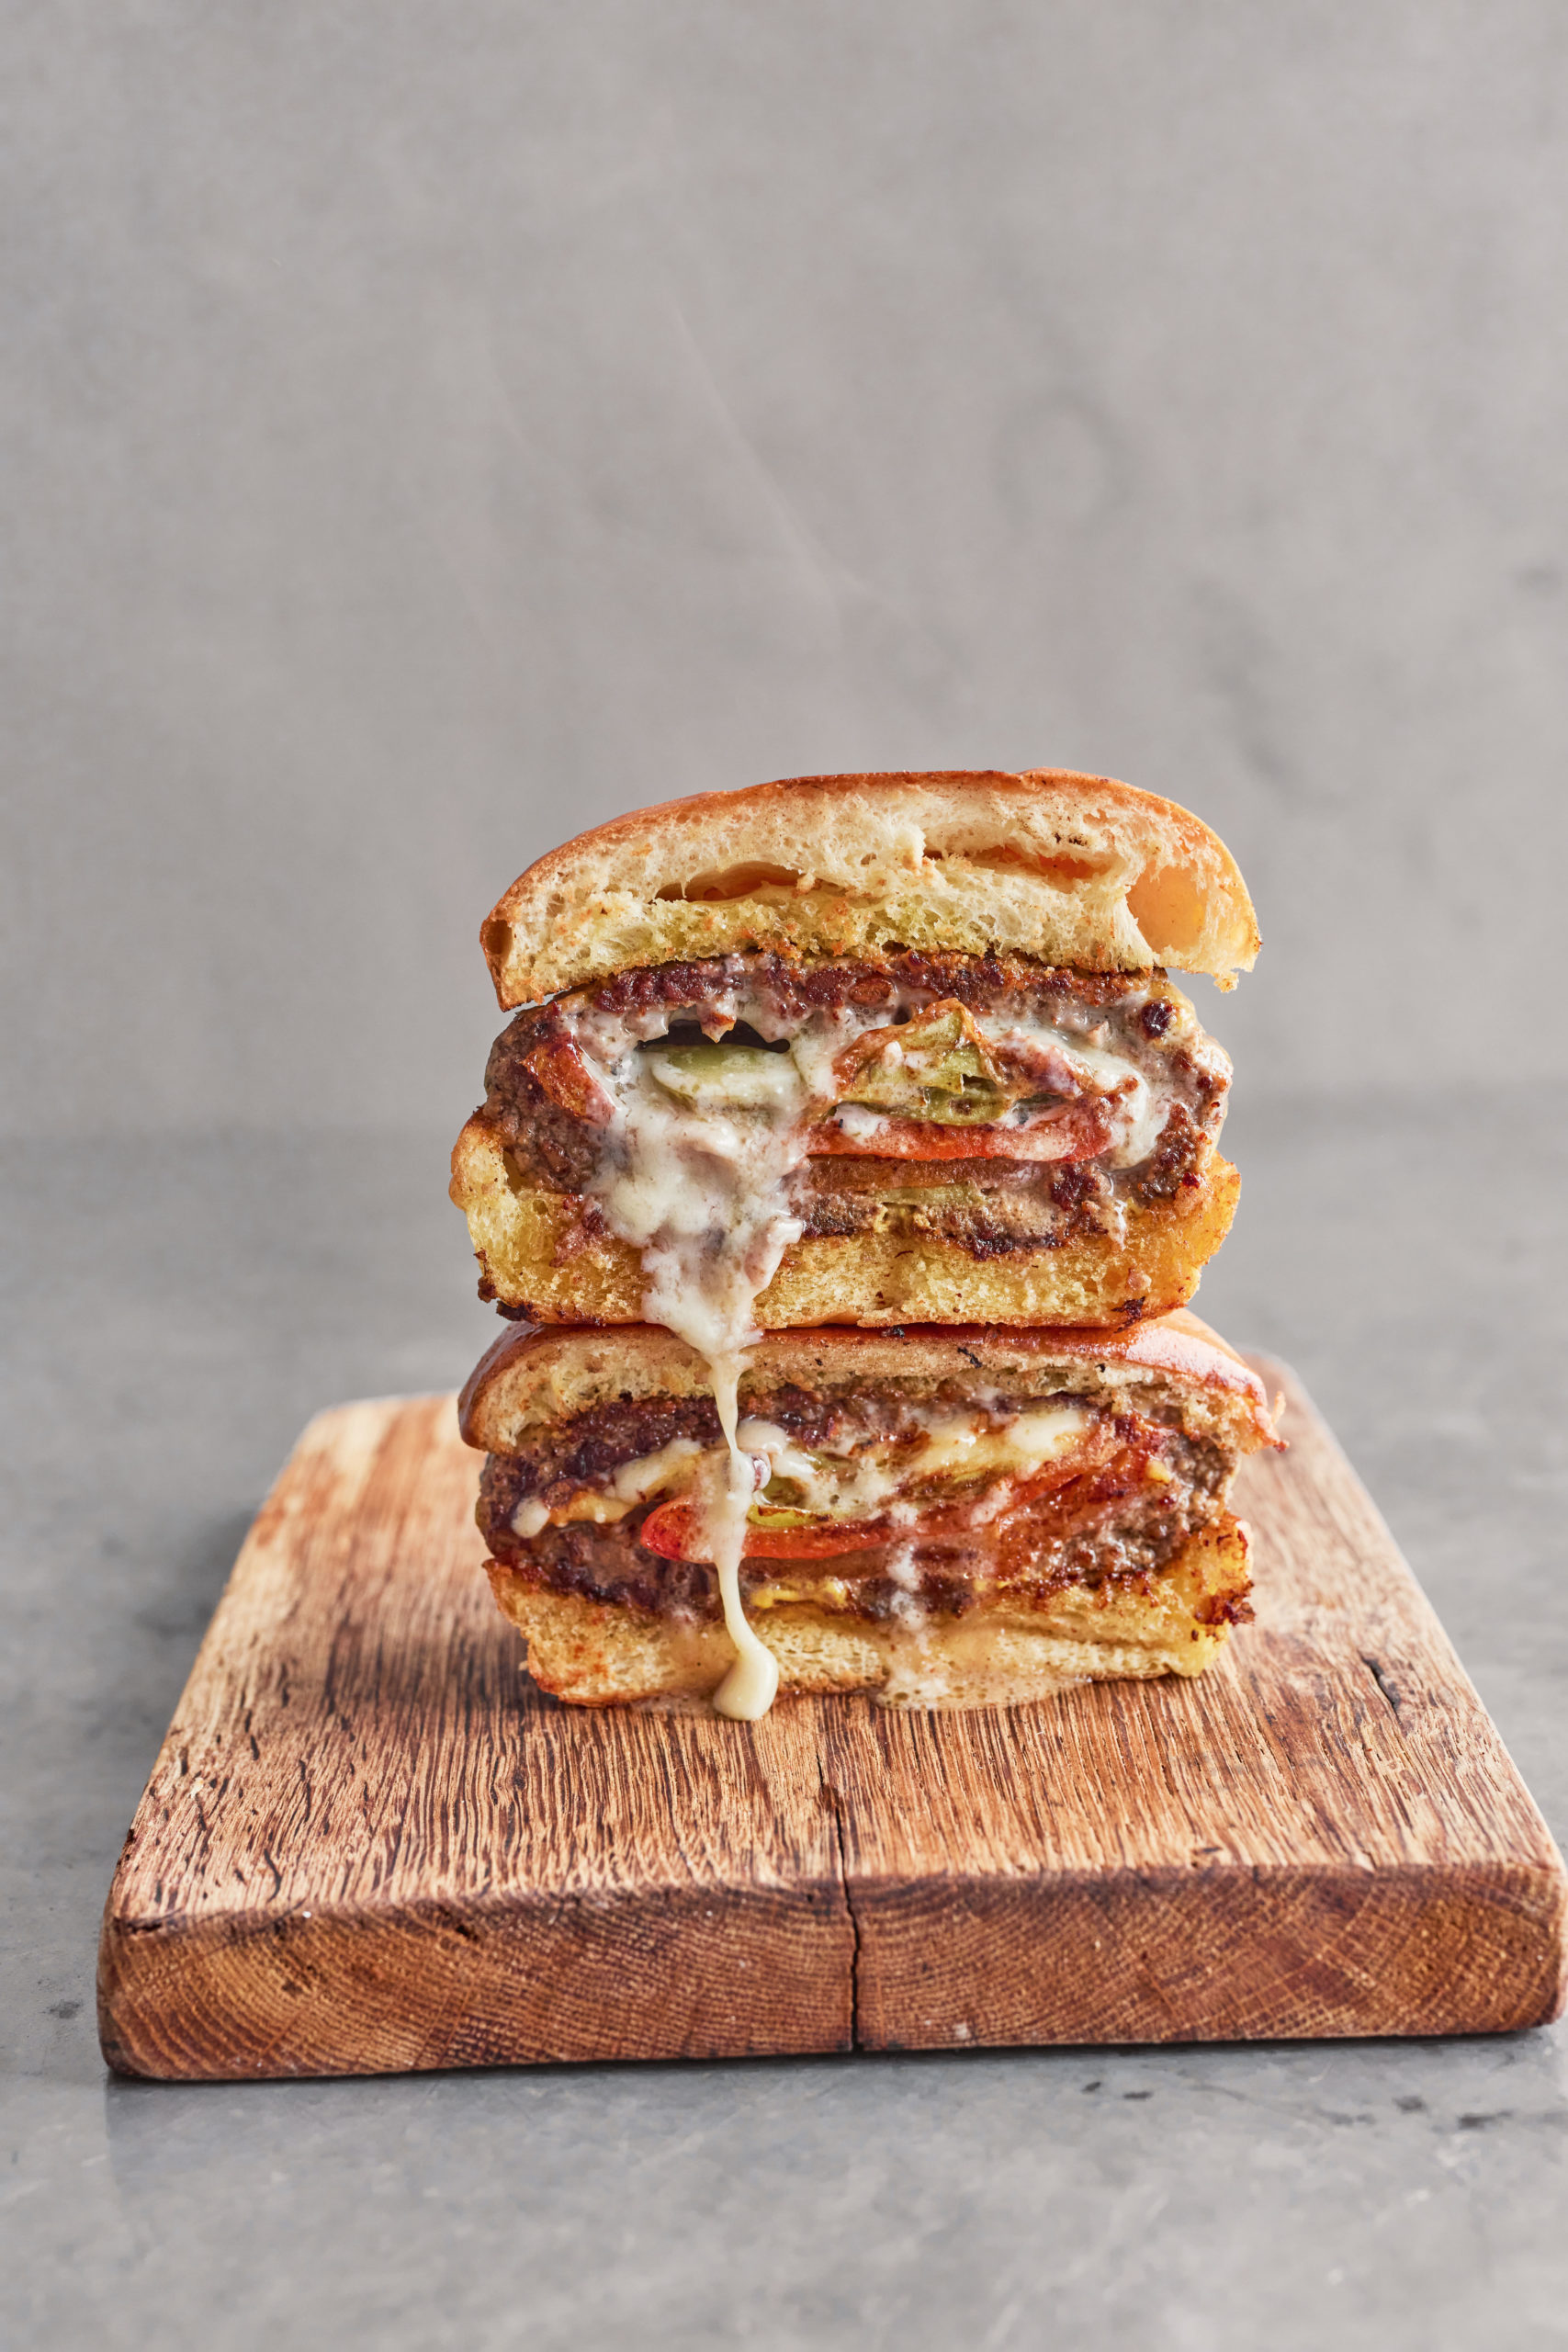 Jamie Oliver Beefburger Recipe | One Pan Wonders Channel 4